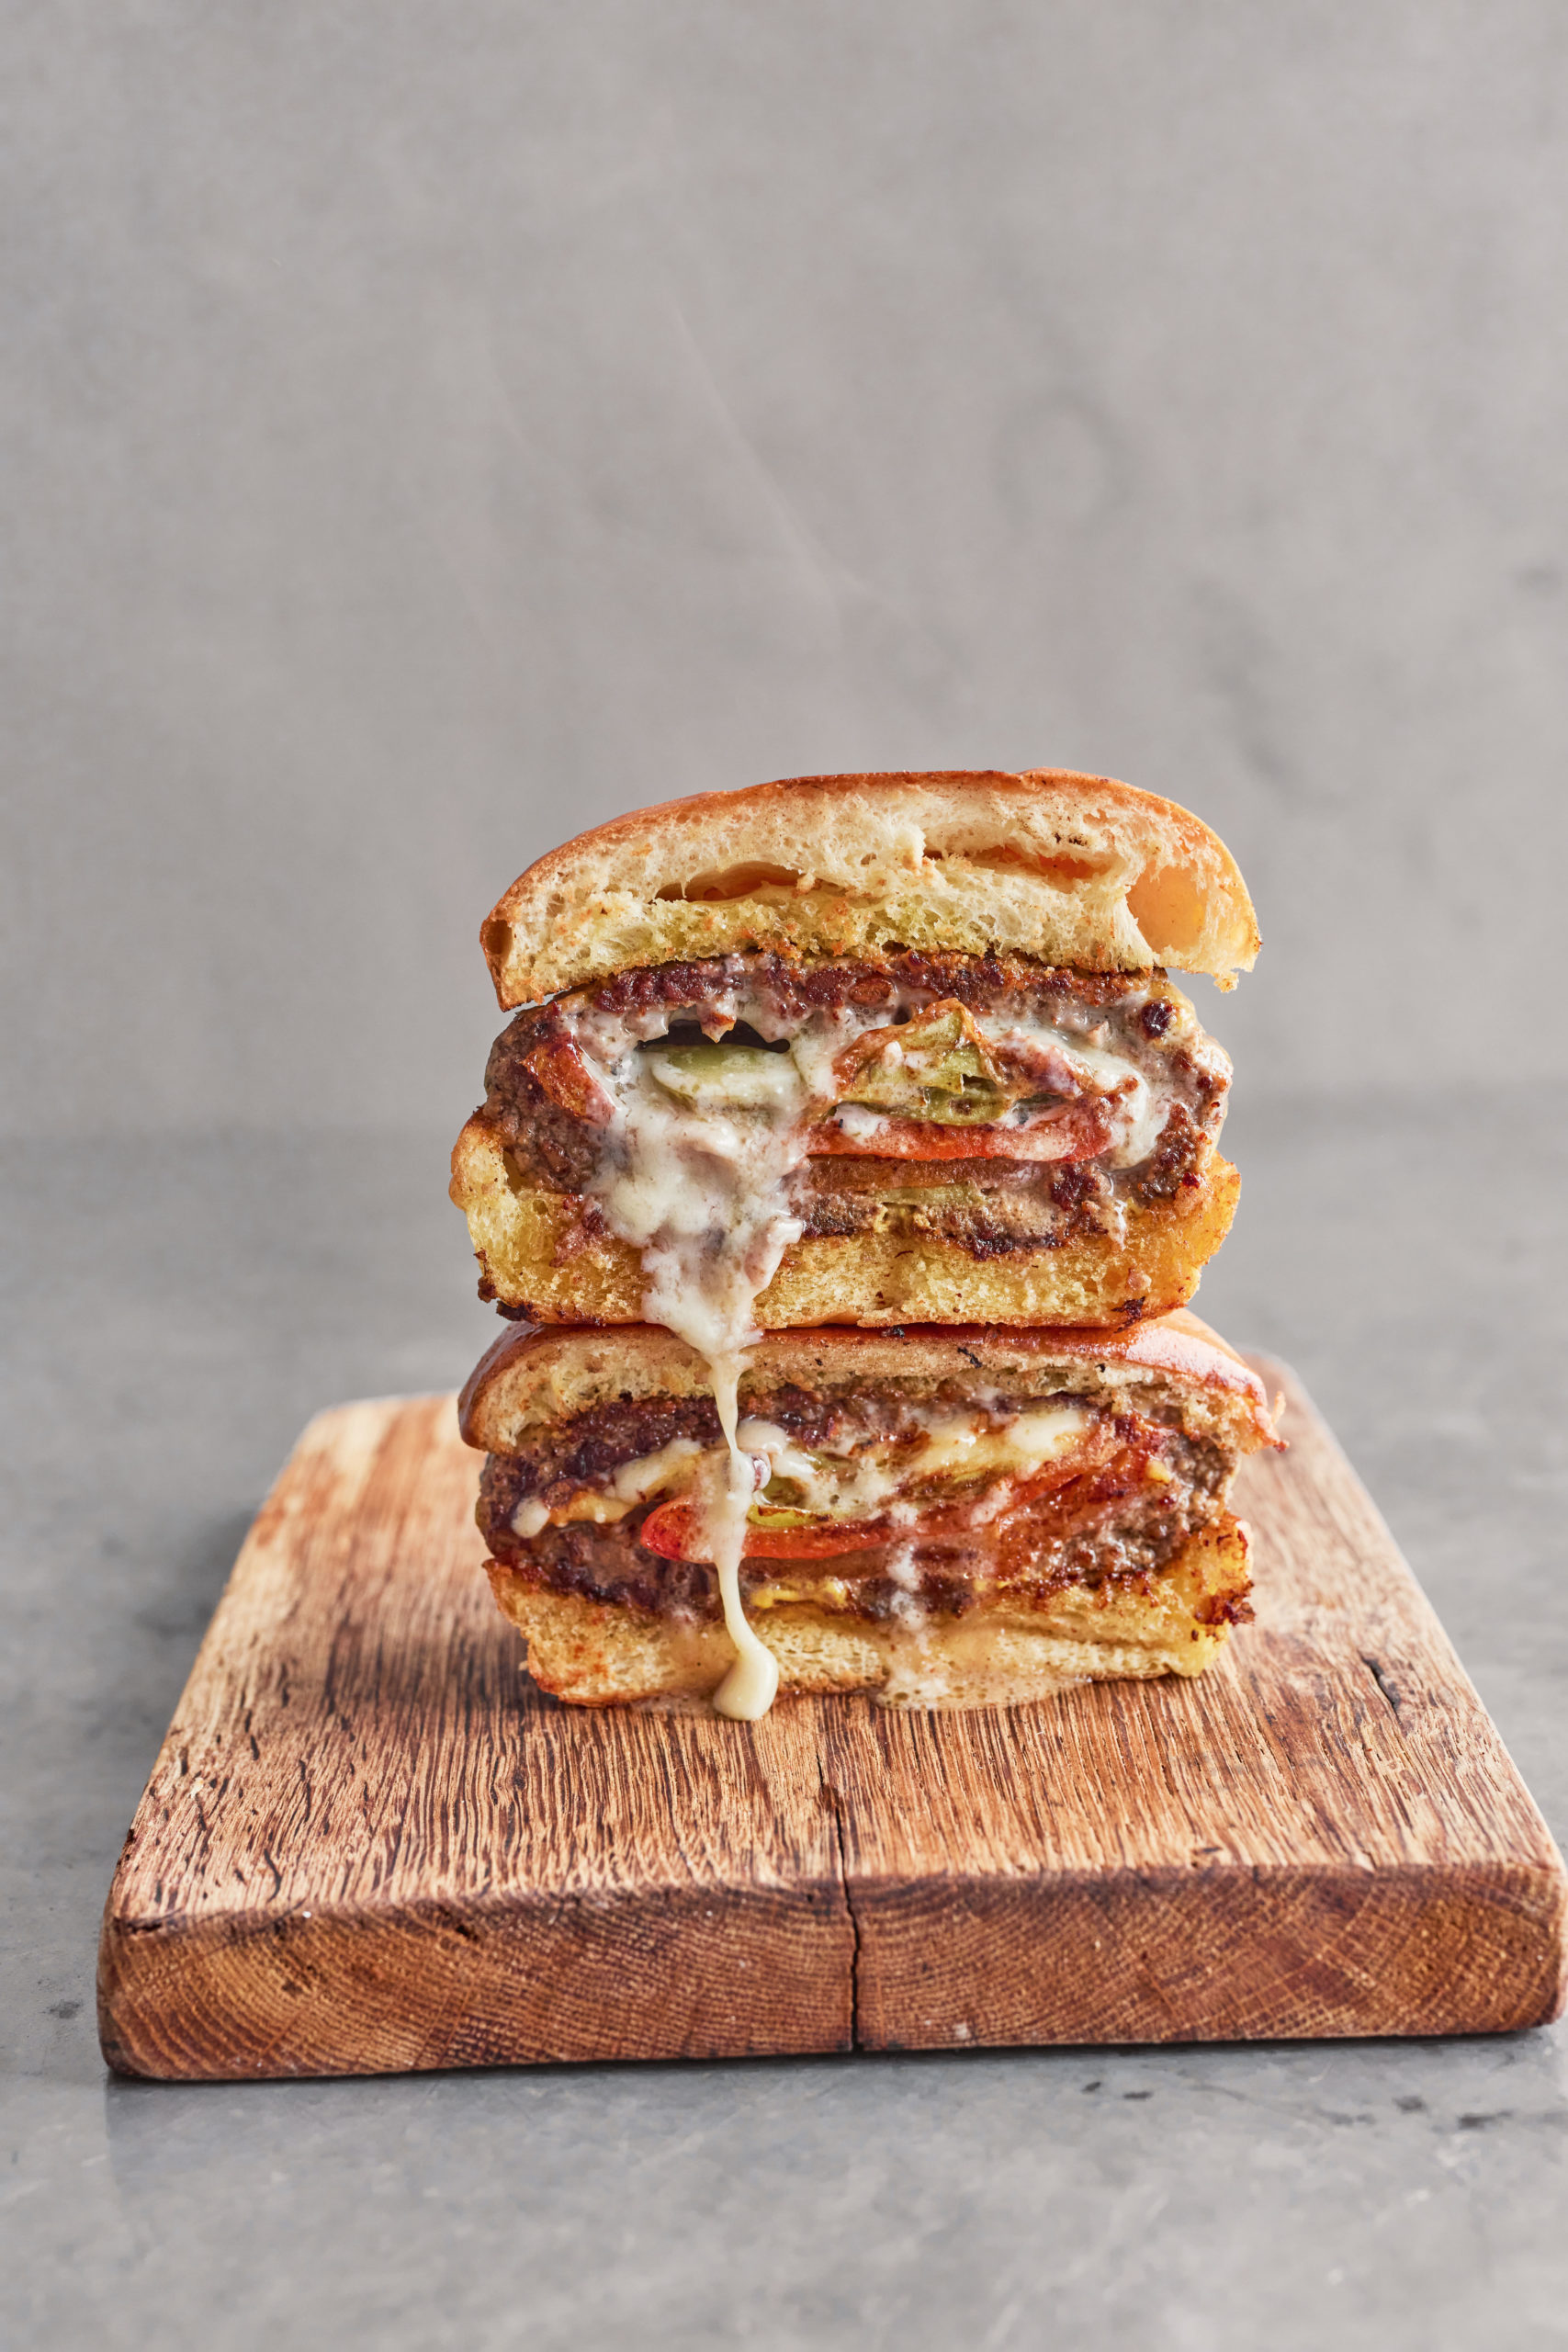 Jamie Oliver Beefburger Recipe | One Pan Wonders Channel 4